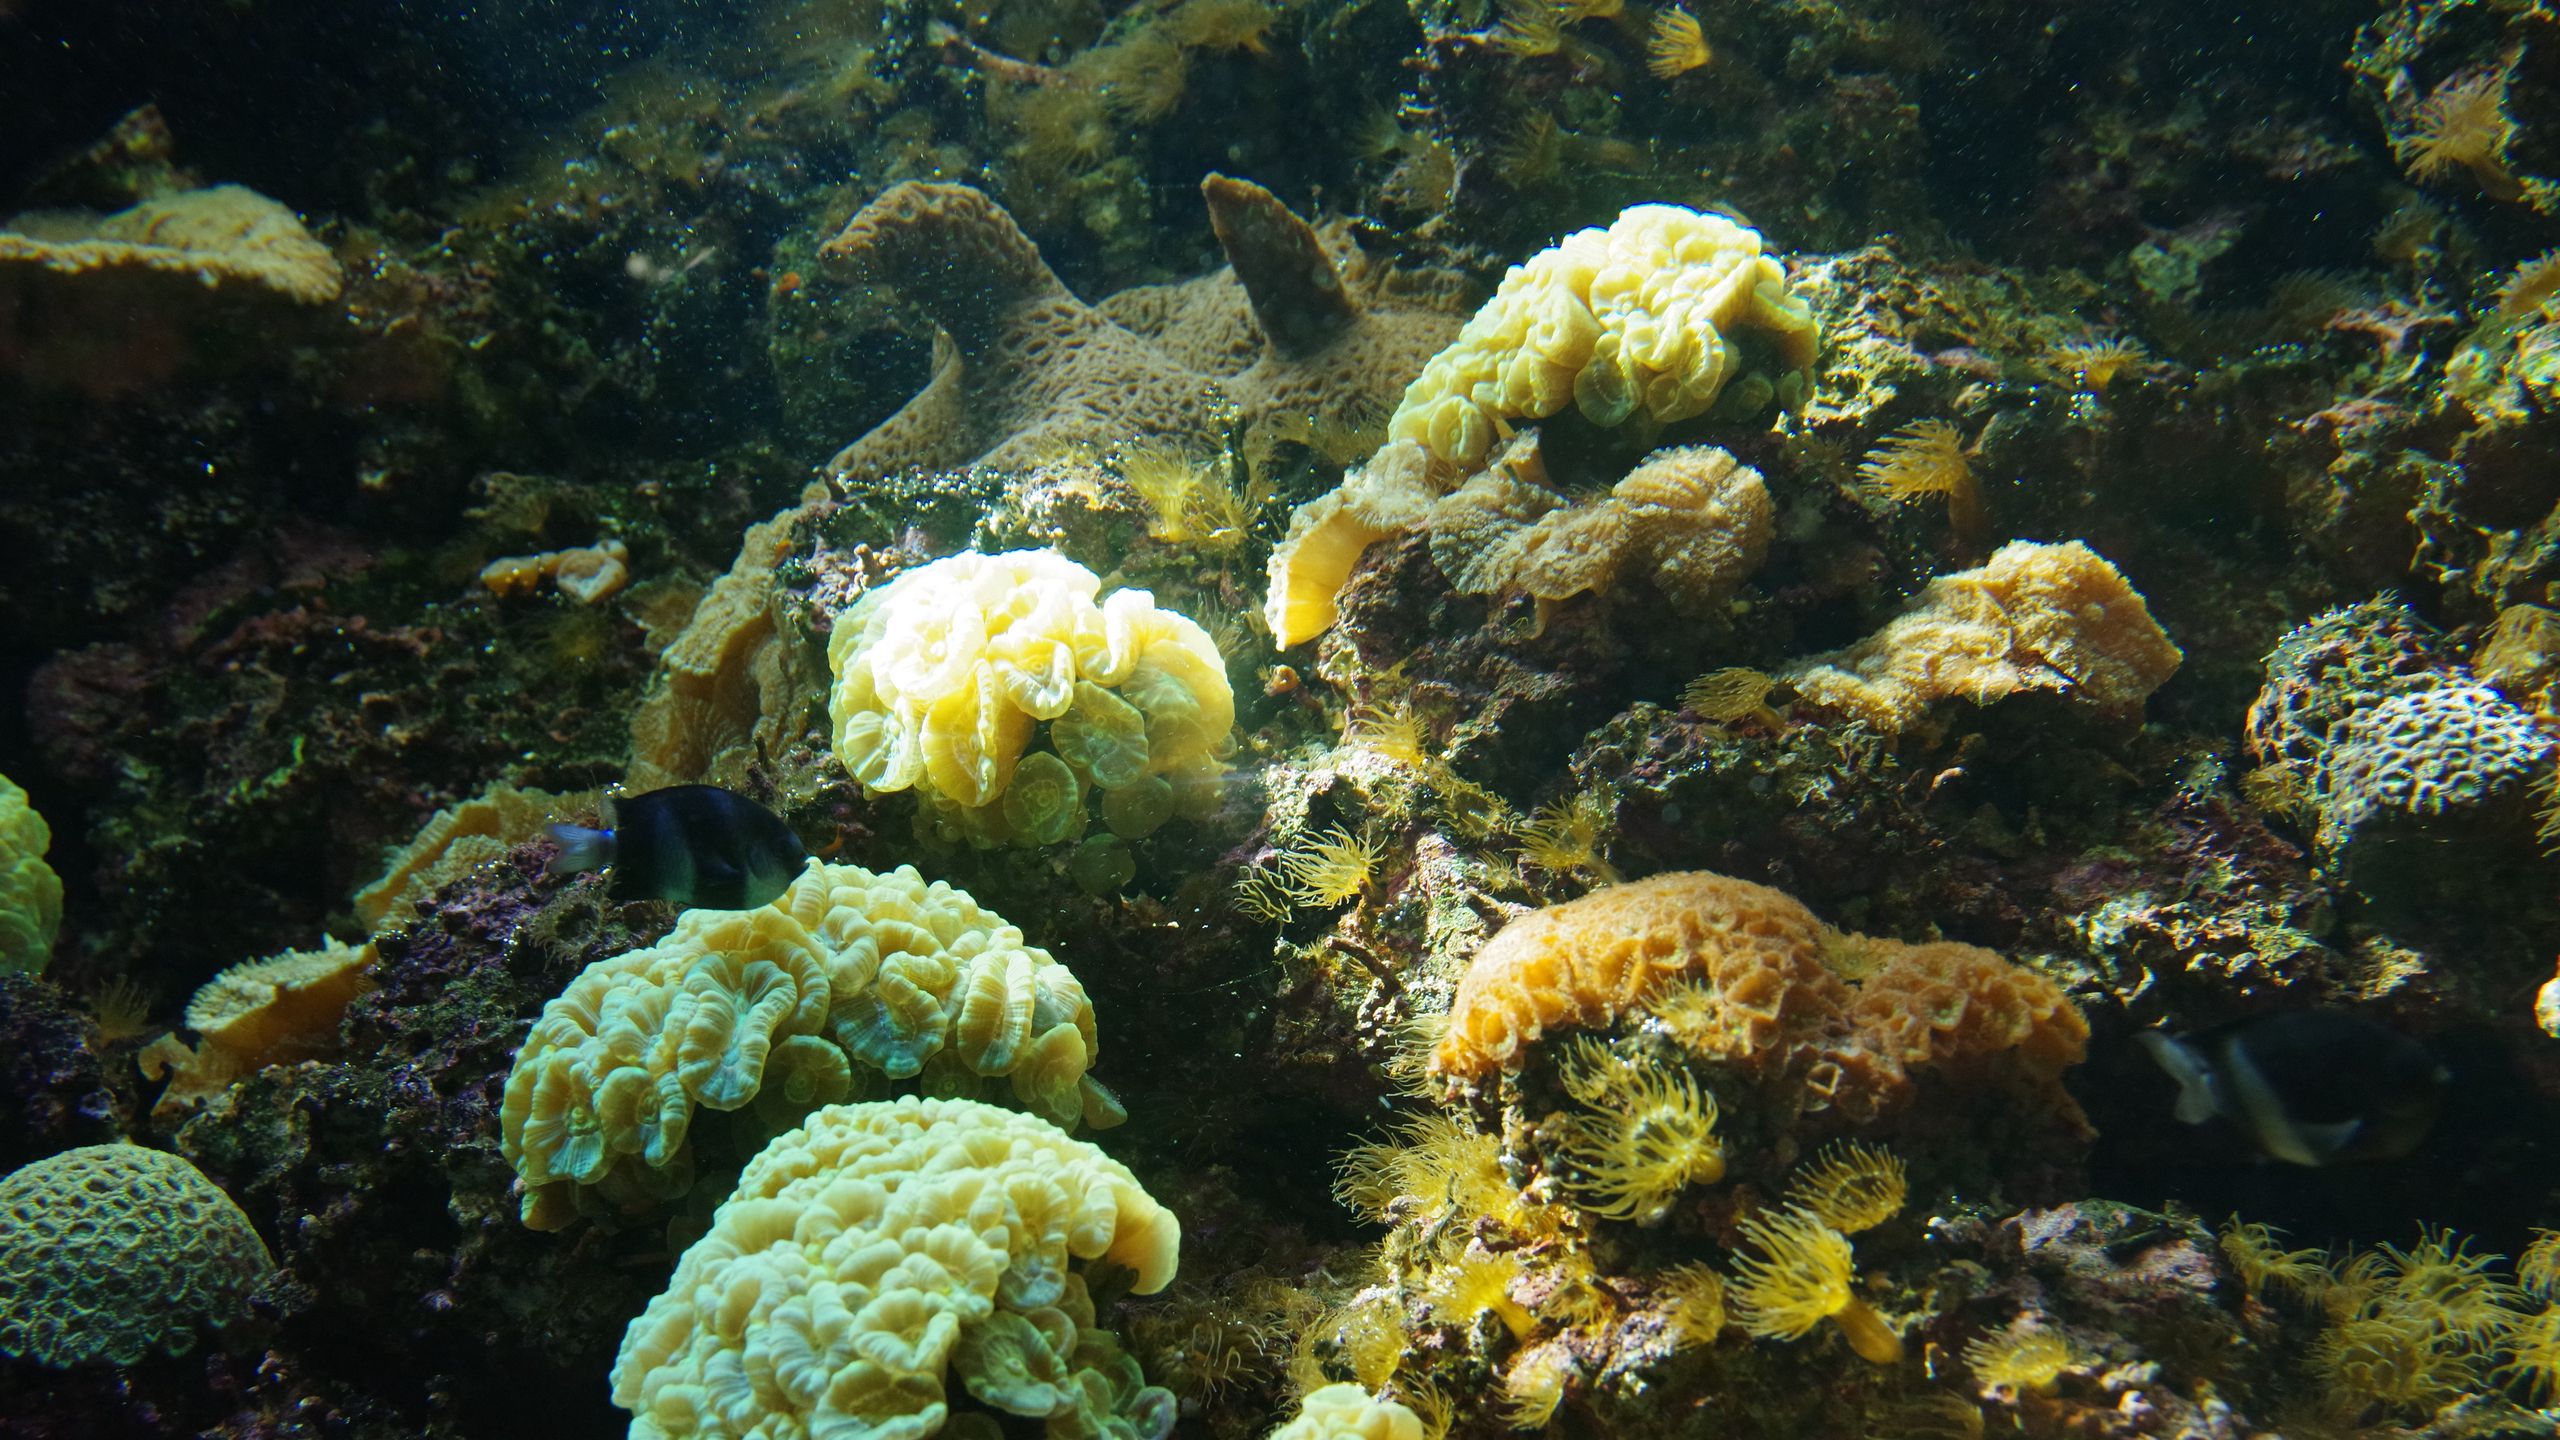 Download wallpaper 2560x1440 corals, algae, water, underwater world ...